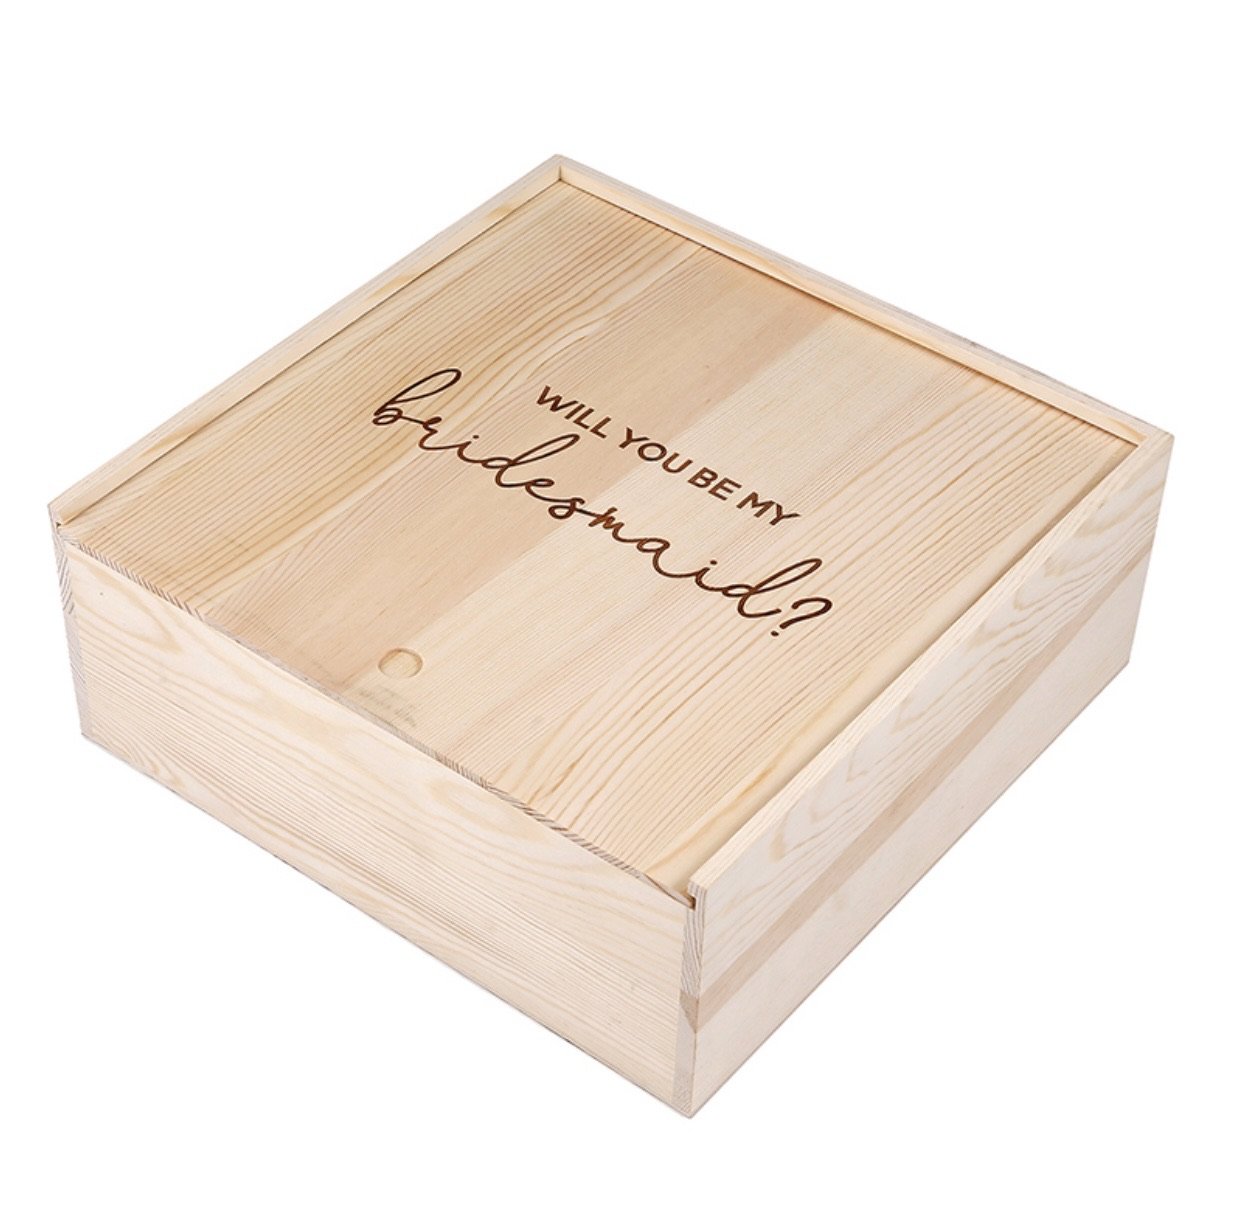 Bridesmaid Proposal Wooden Box